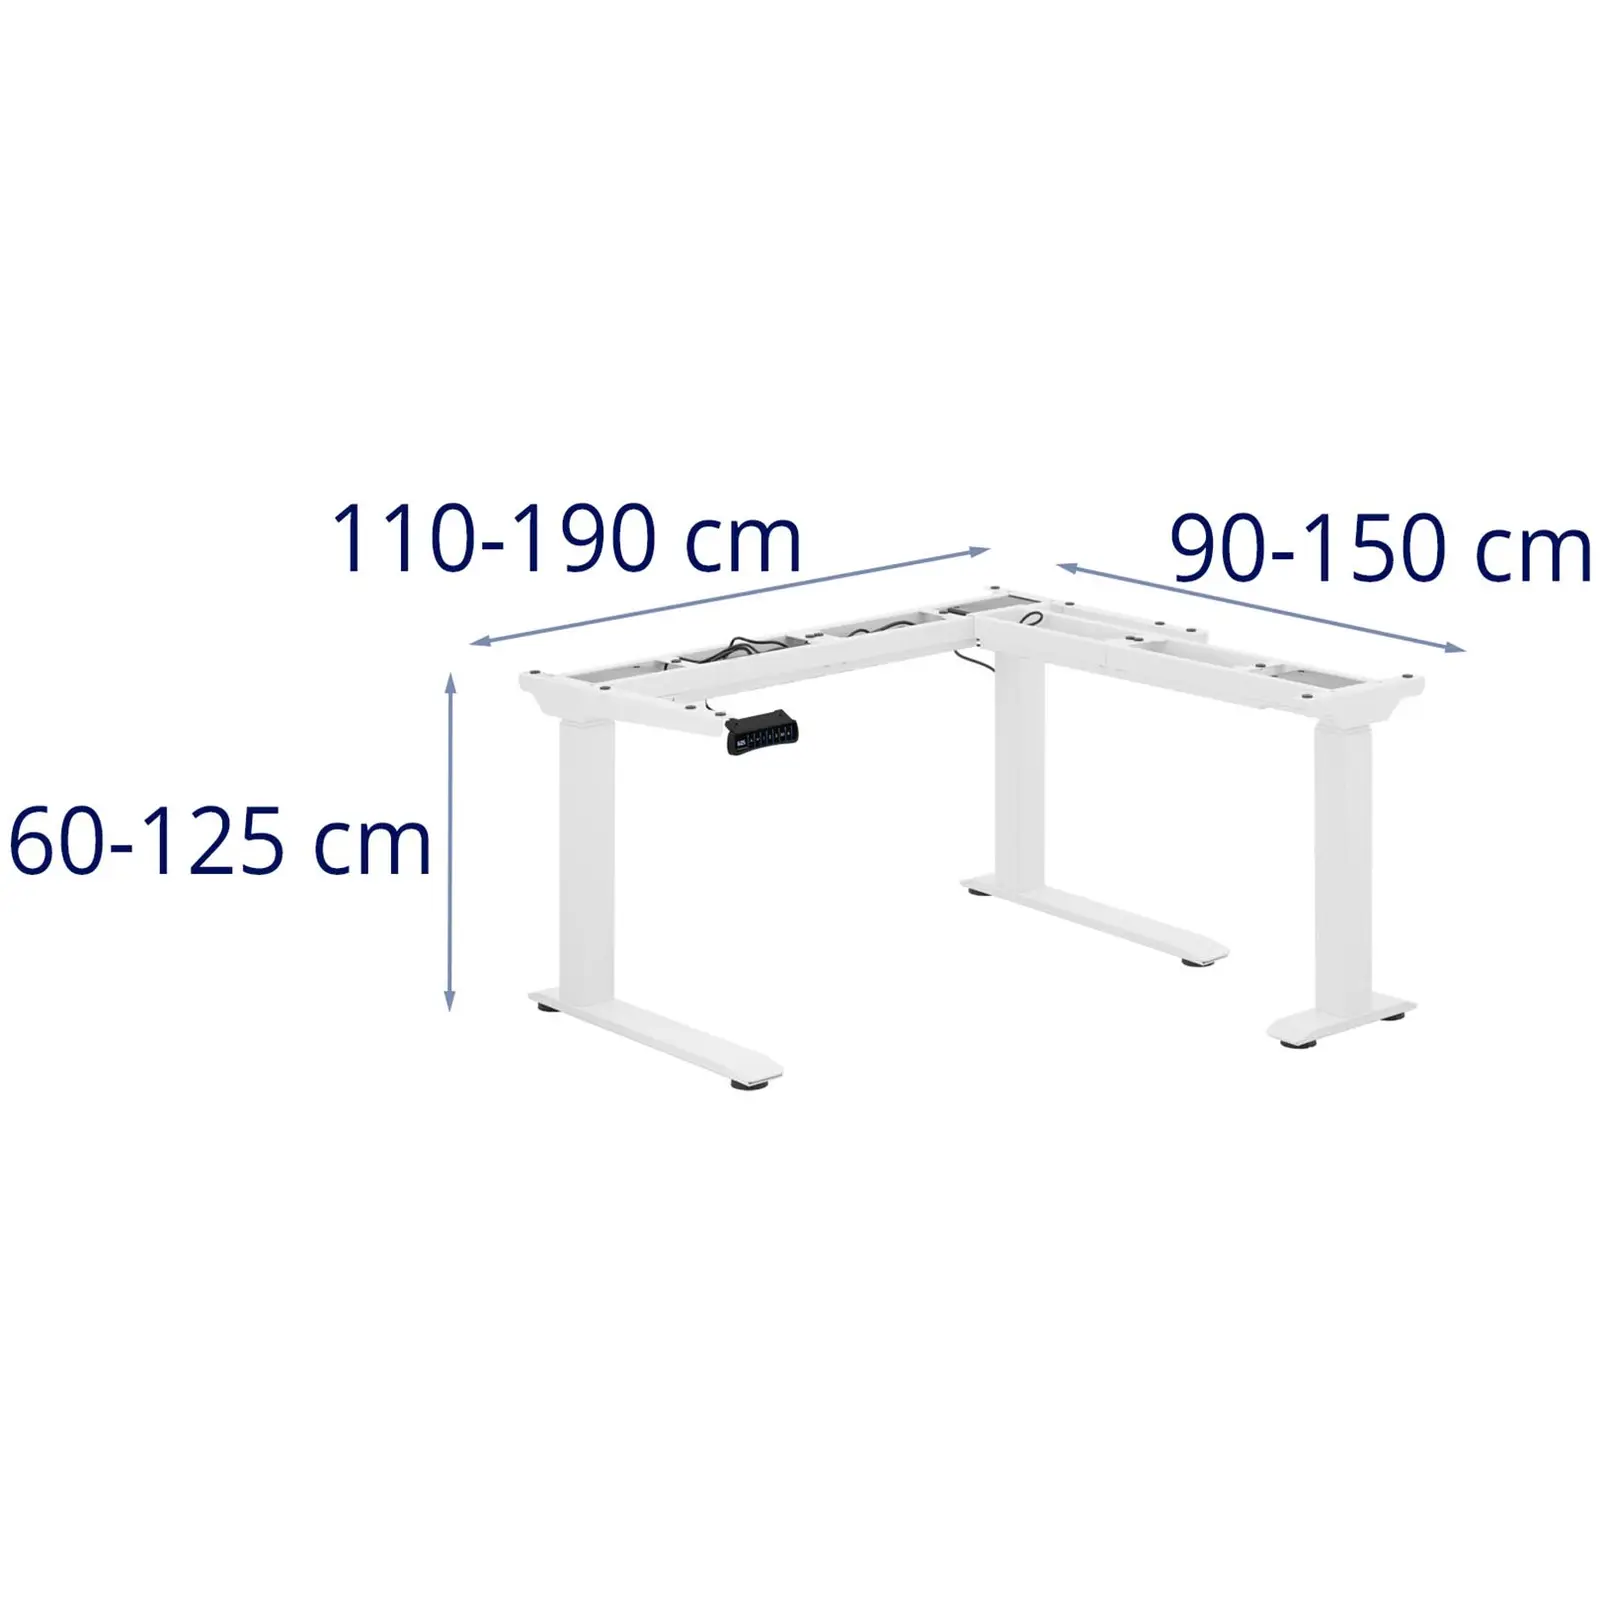 Bureau d'angle réglable en hauteur - Hauteur : 60 - 125 cm - Largeur : 110 - 190 cm (gauche) / 90 - 150 cm (droite)